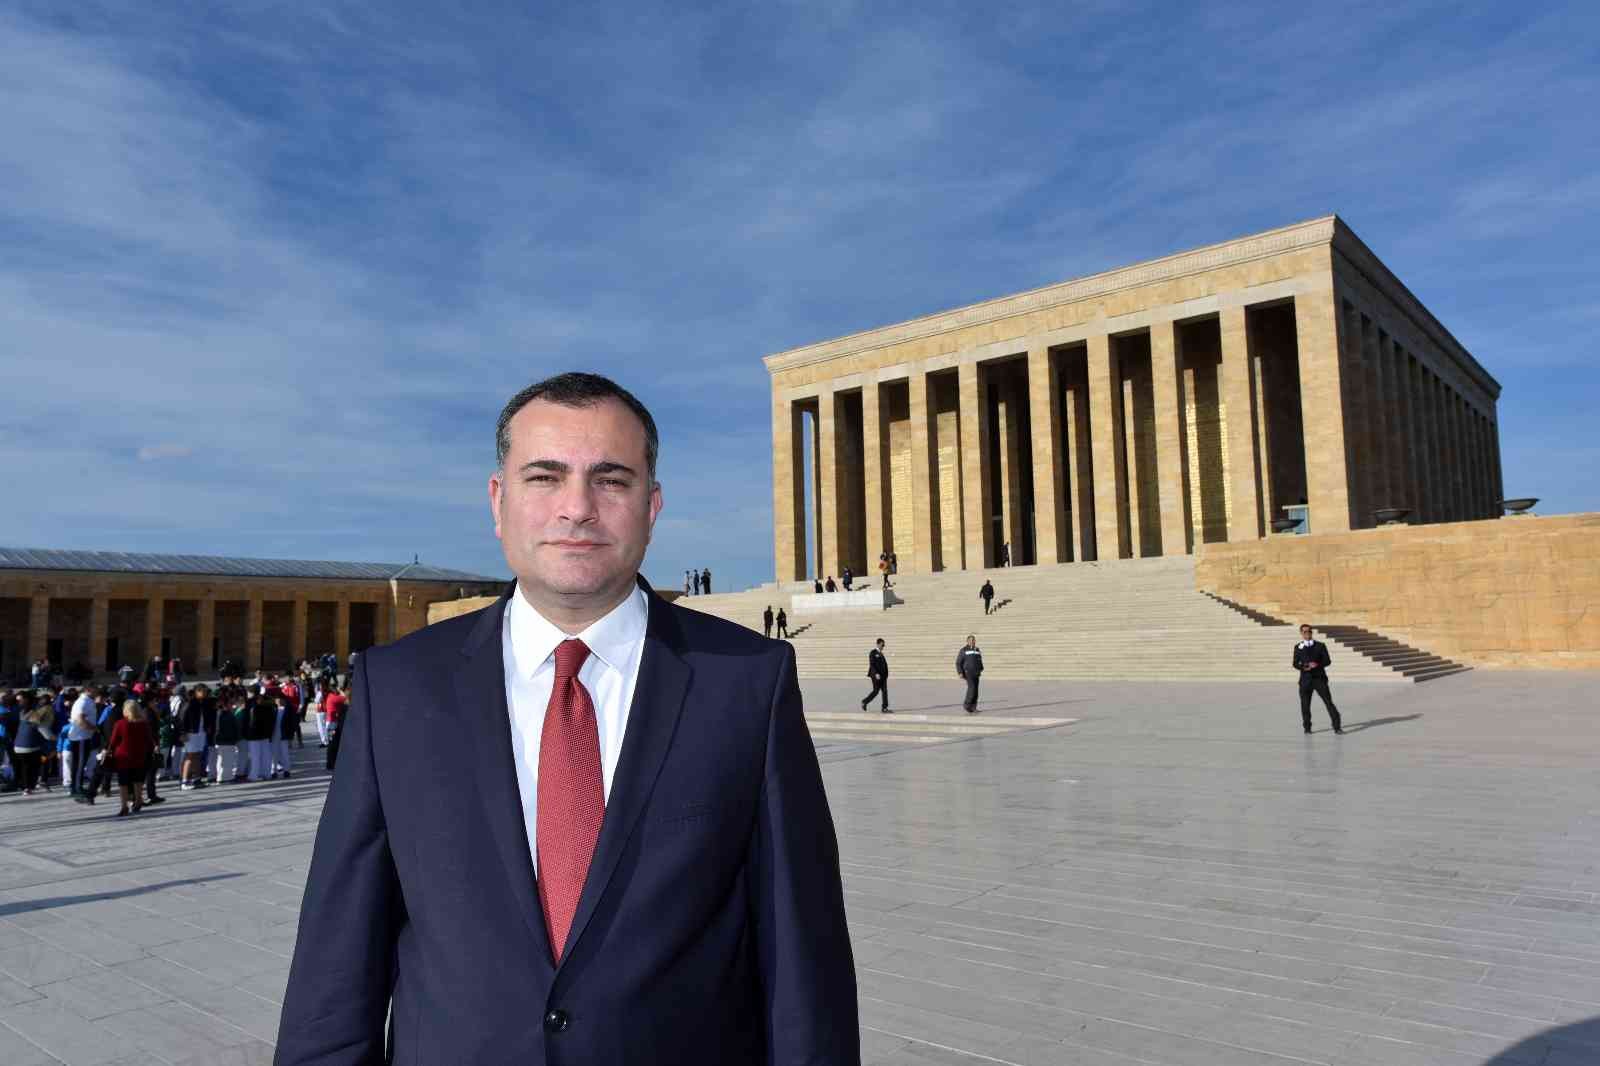 Çankaya Belediye Başkanı Alper Taşdelen’den yeni yıl mesajı #ankara